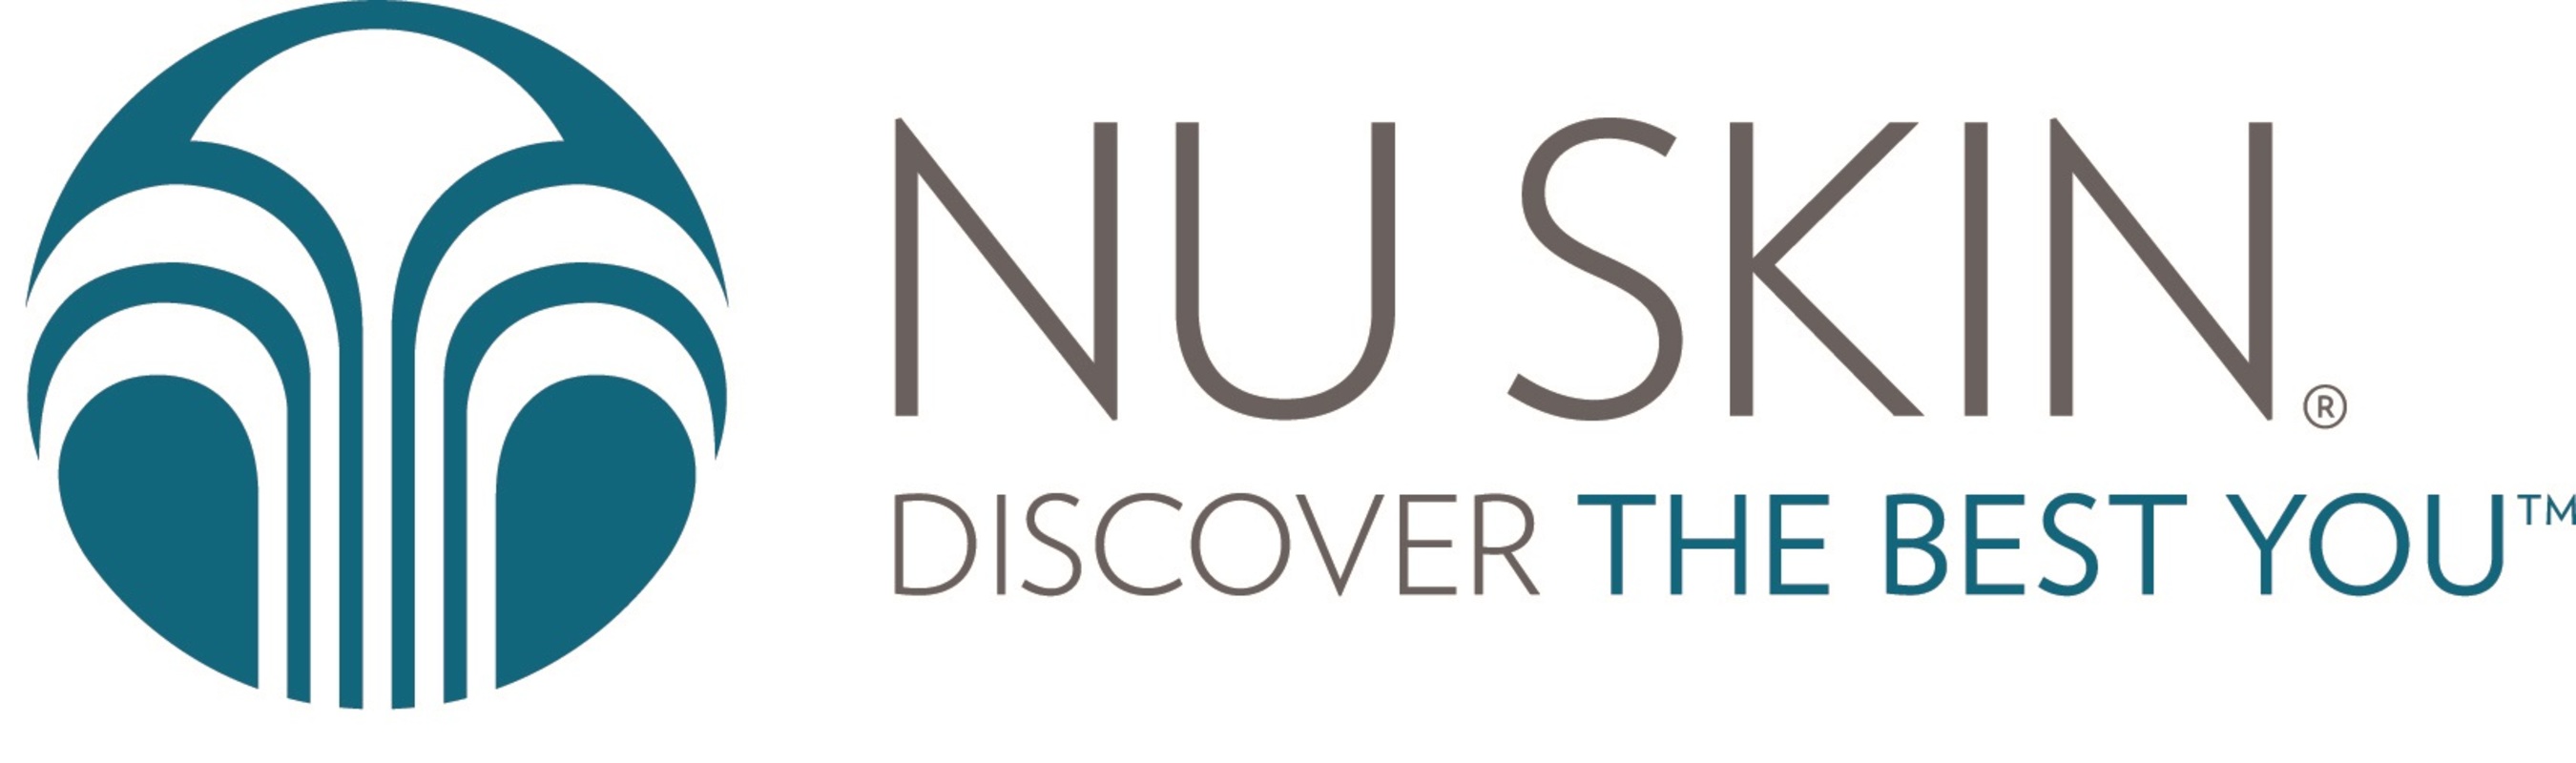 Nu Skin Enterprises Announces Strategic Investment